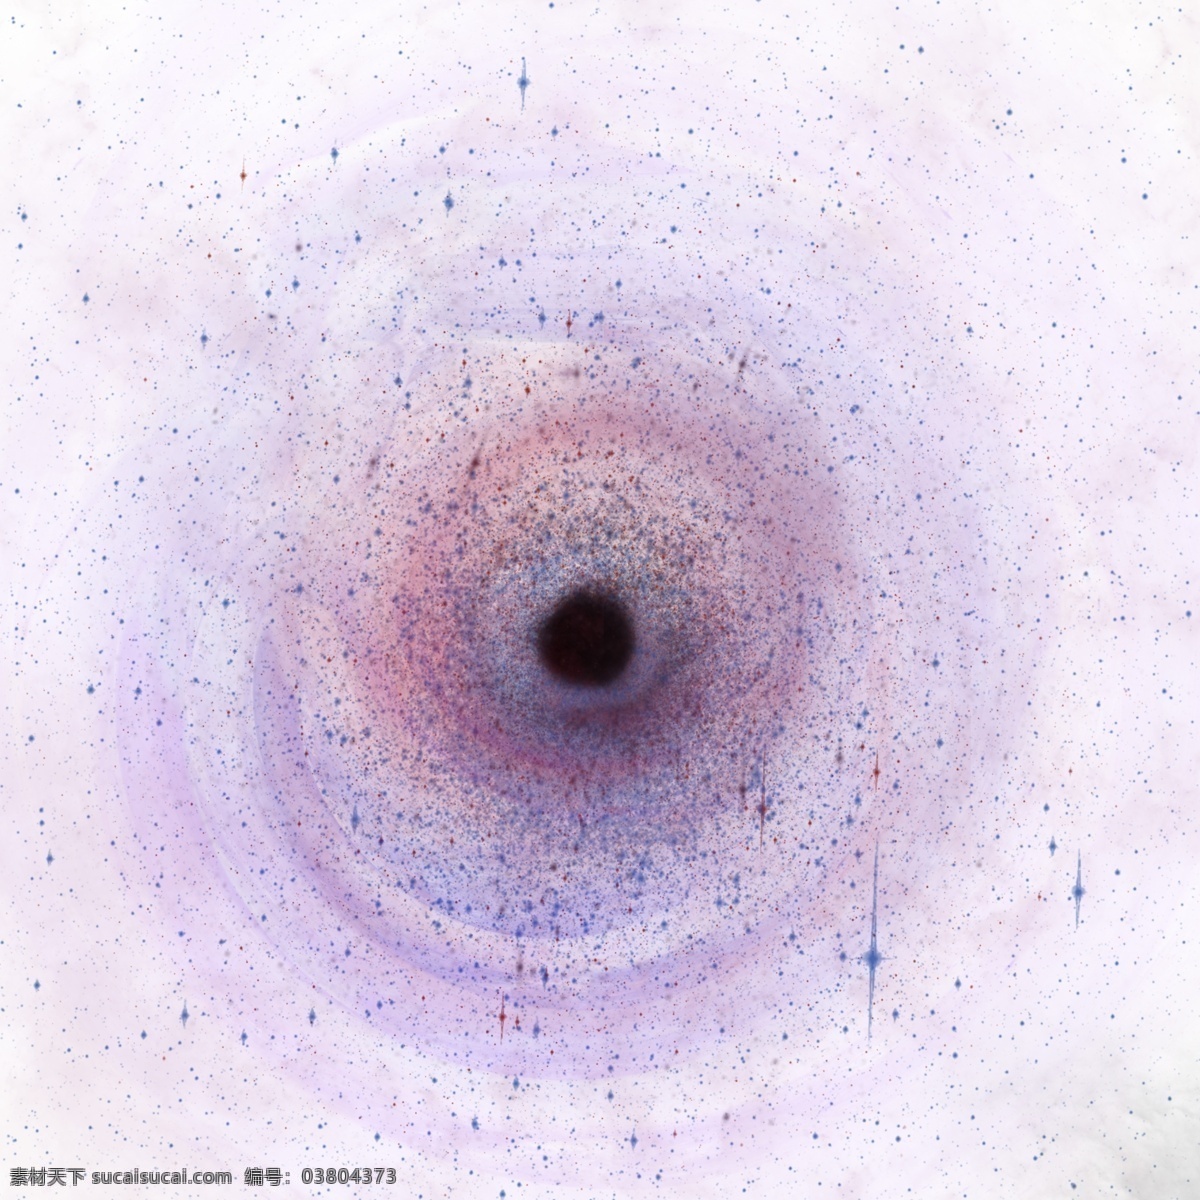 奇妙 宇宙 超级 黑洞 浩瀚宇宙 星空 星云 繁星点点 五颜六色 奇妙宇宙黑洞 发光 吸积气体 超级黑洞